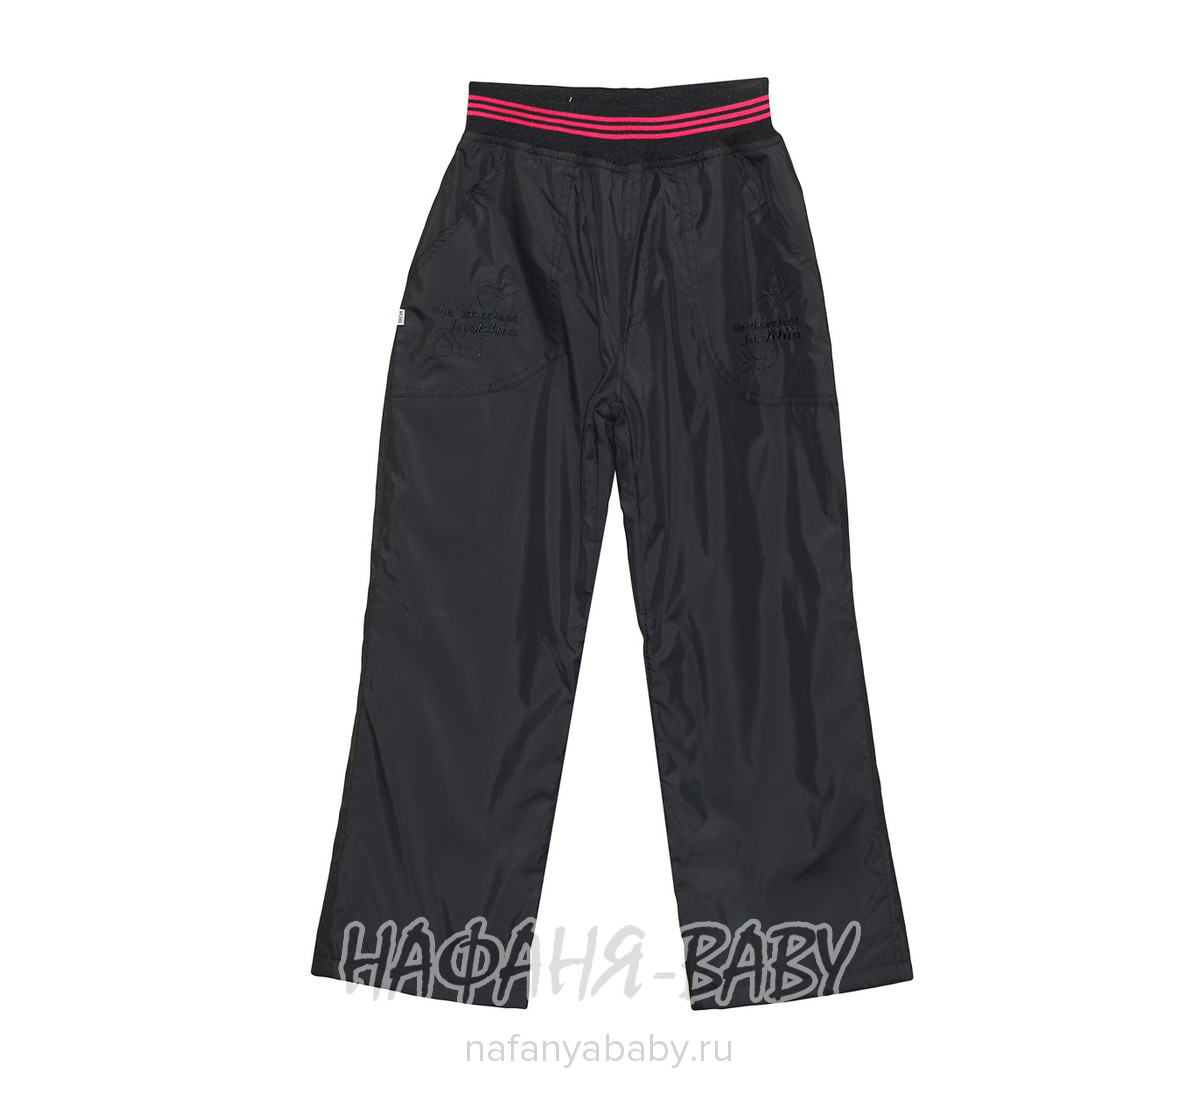 Детские утепленные брюки EMUR, купить в интернет магазине Нафаня. арт: 623.